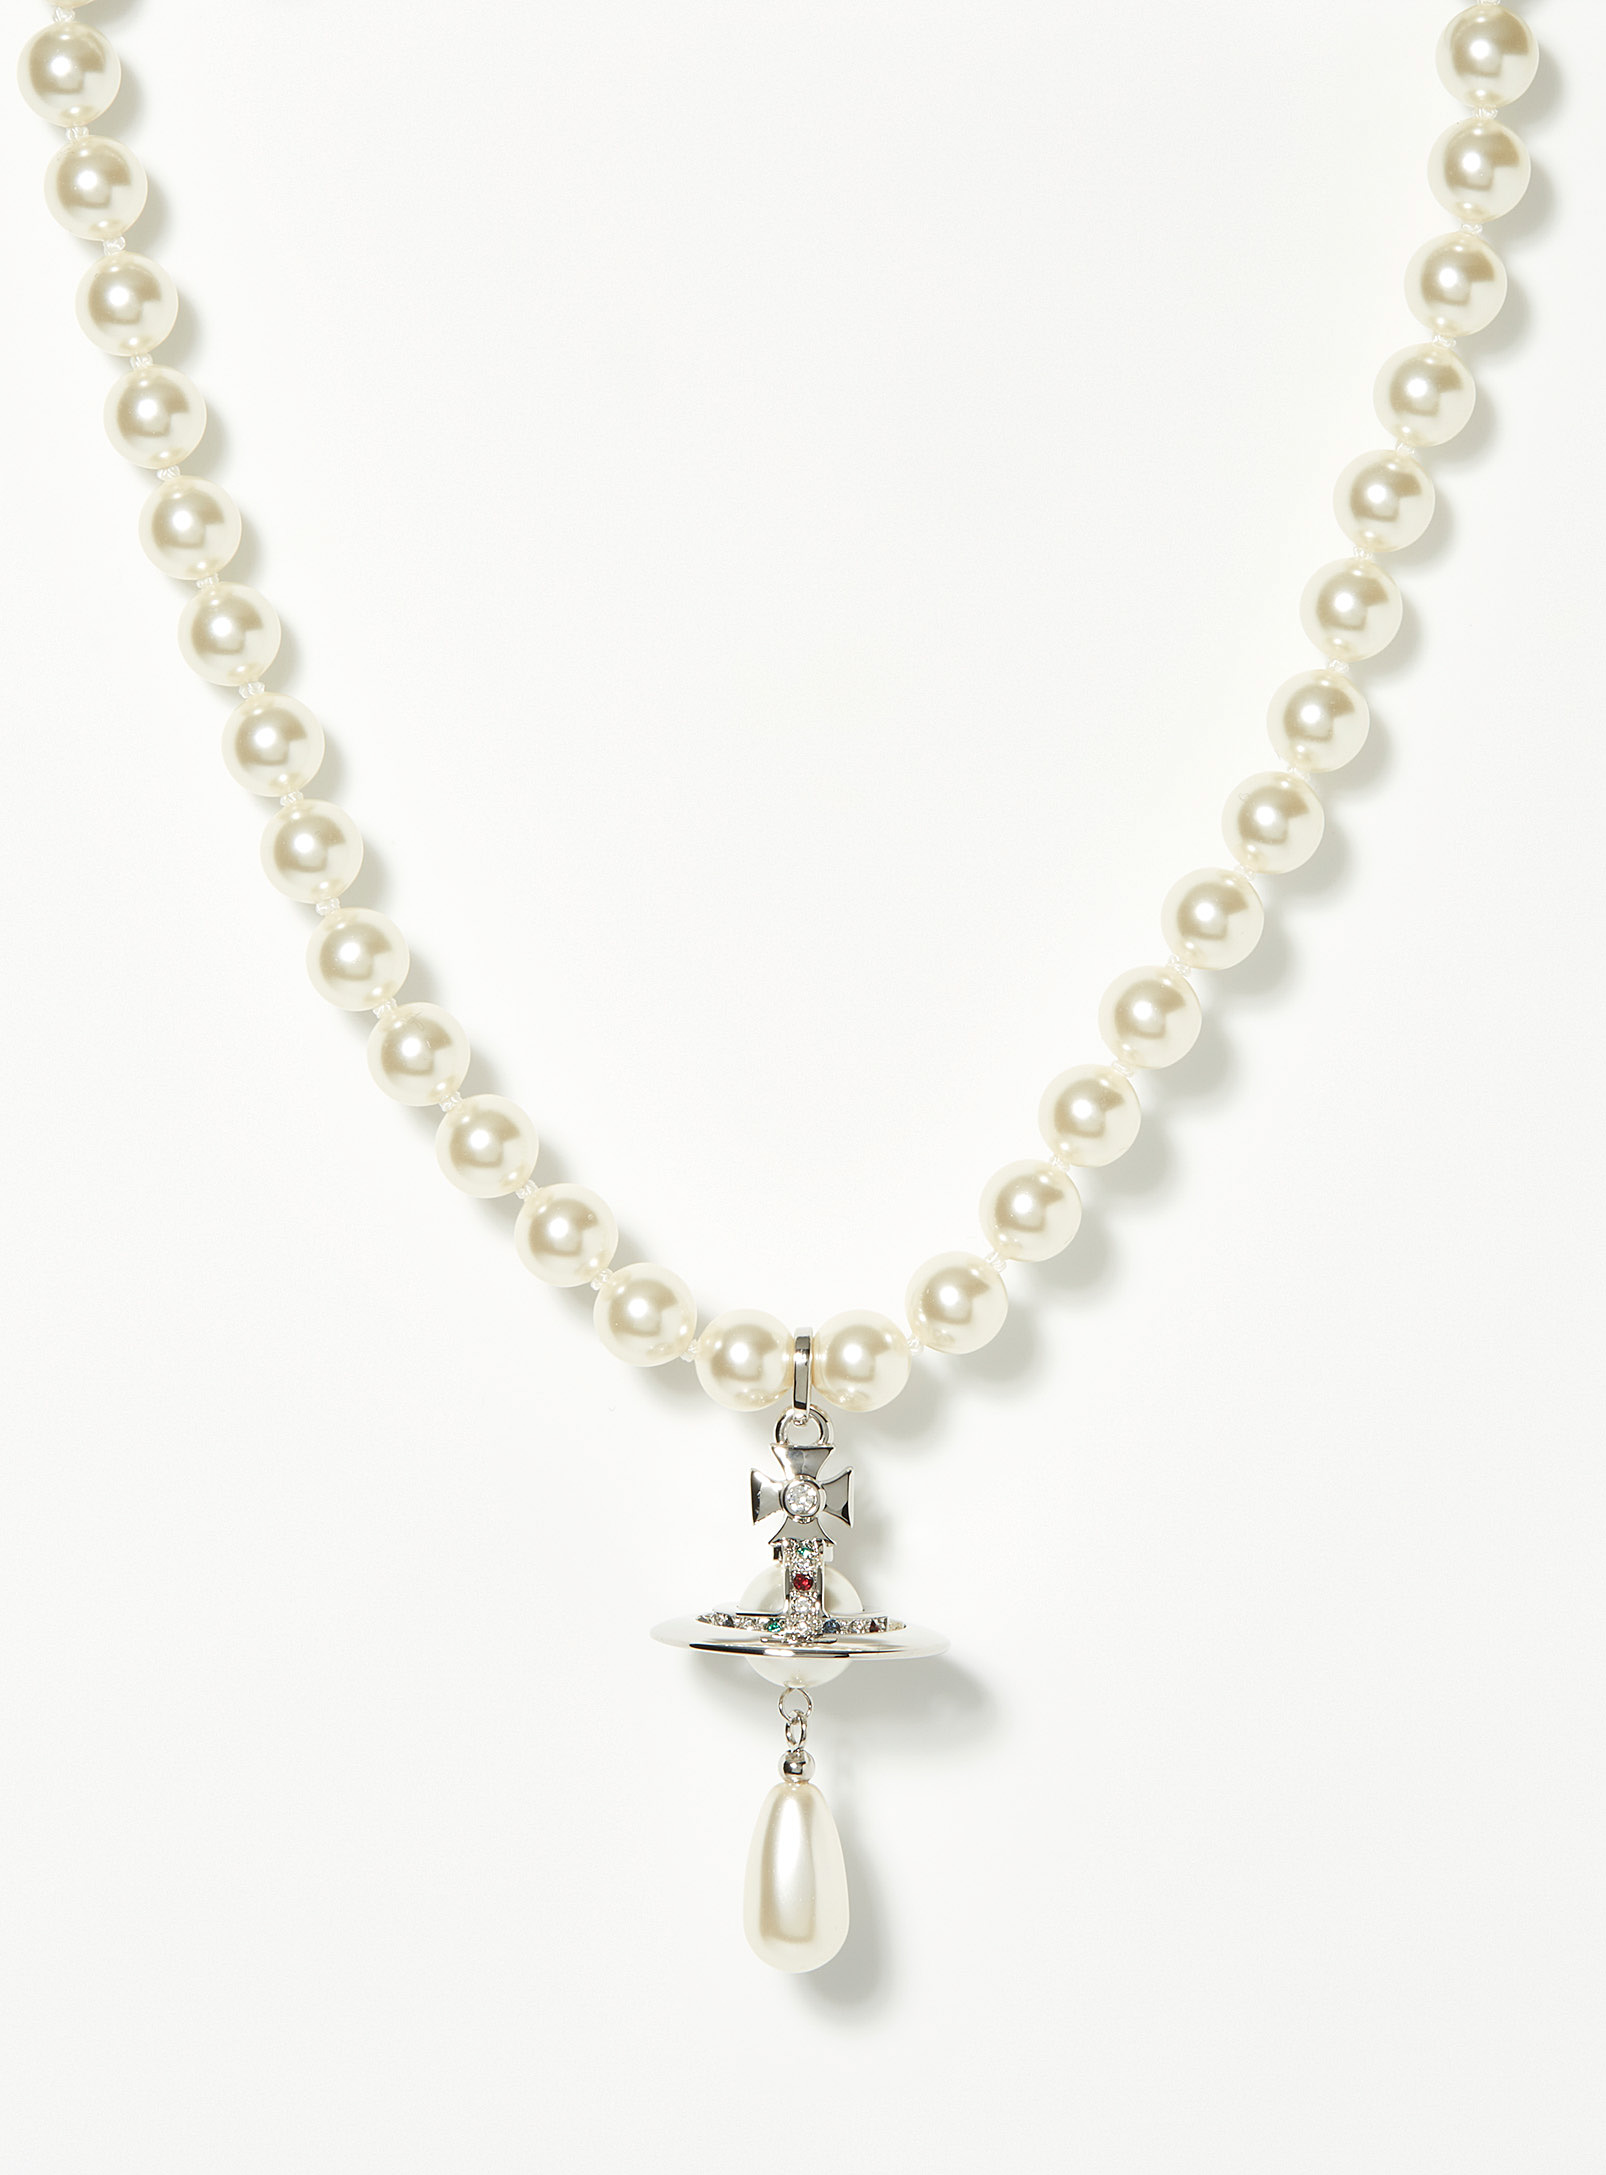 Vivienne Westwood - Le collier billes nacrées orbe cristaux